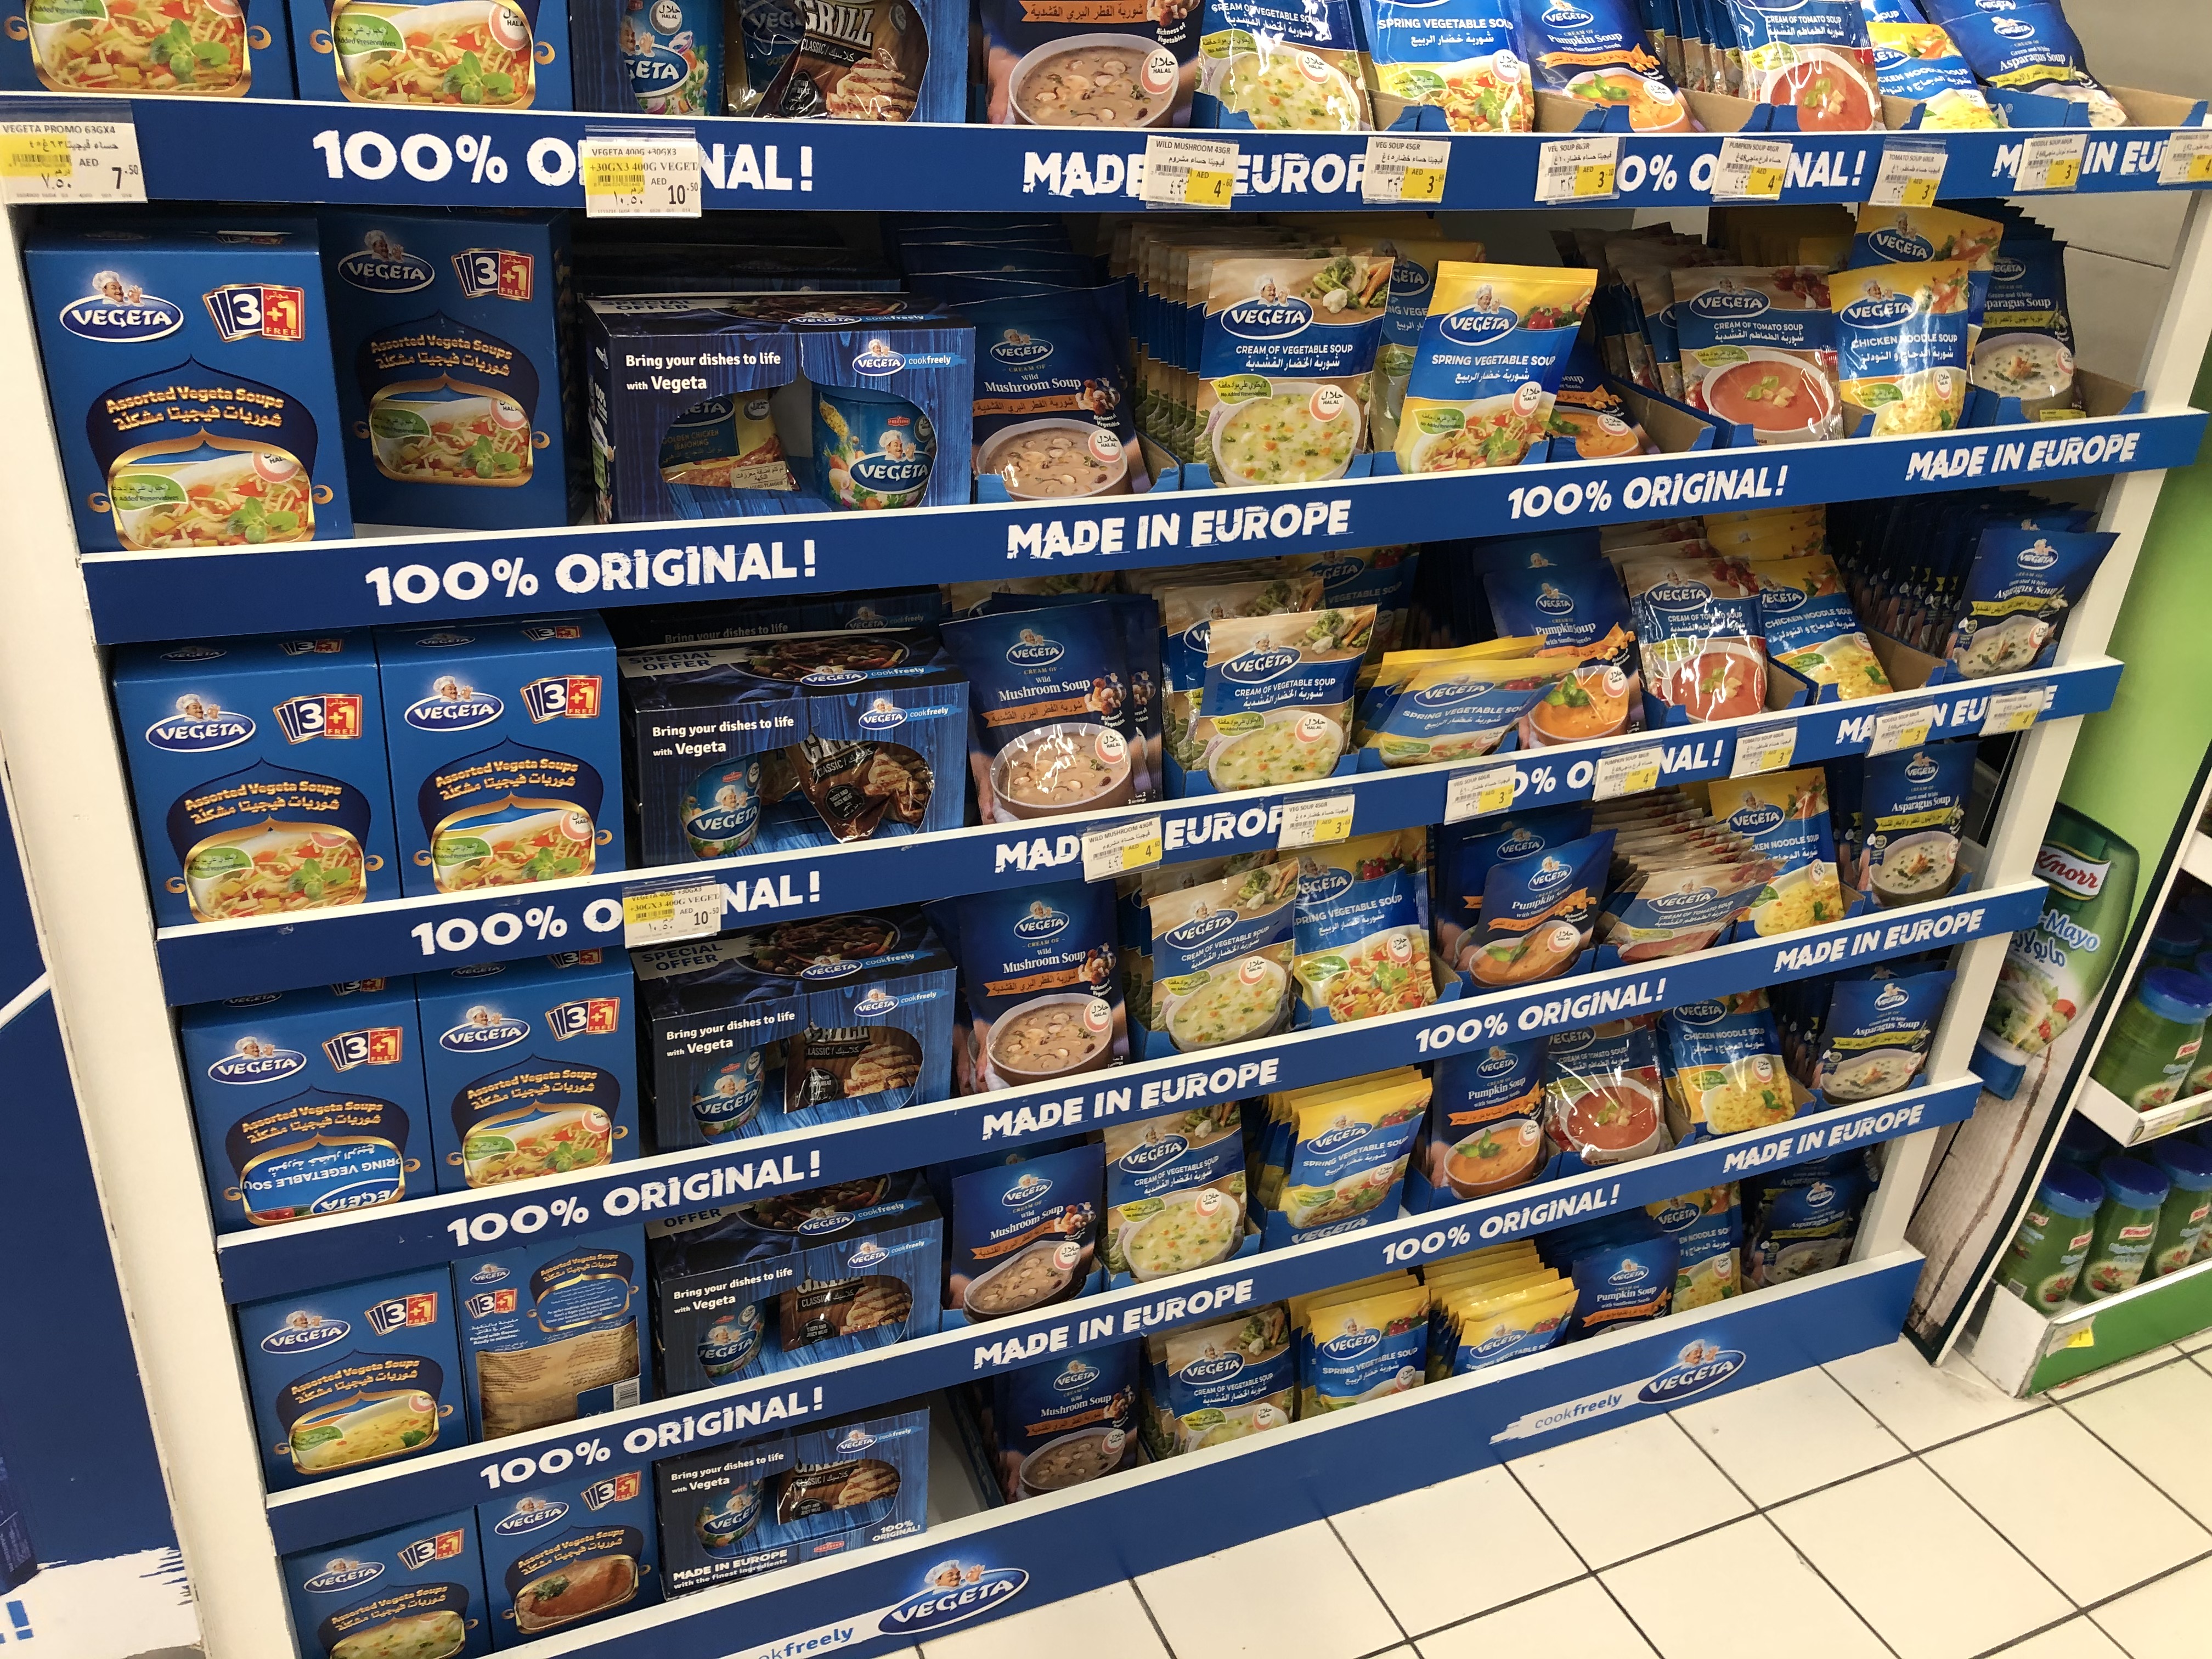 A Vegeta termékei is egyre nagyobb helyet kapnak a szupermarketekben.